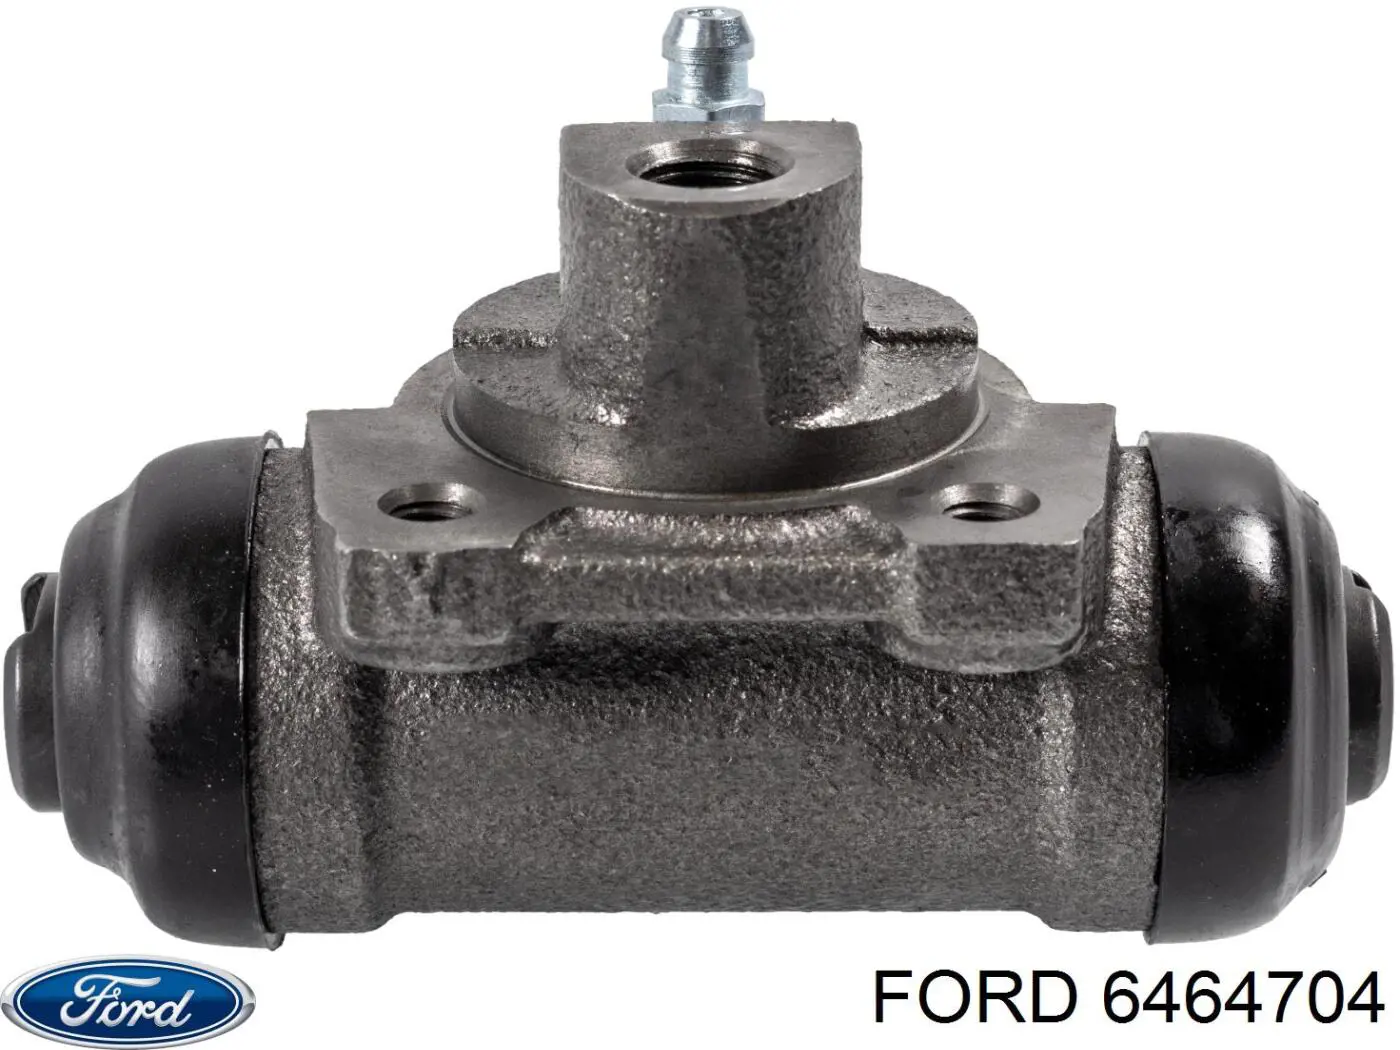 6464704 Ford cilindro de freno de rueda trasero